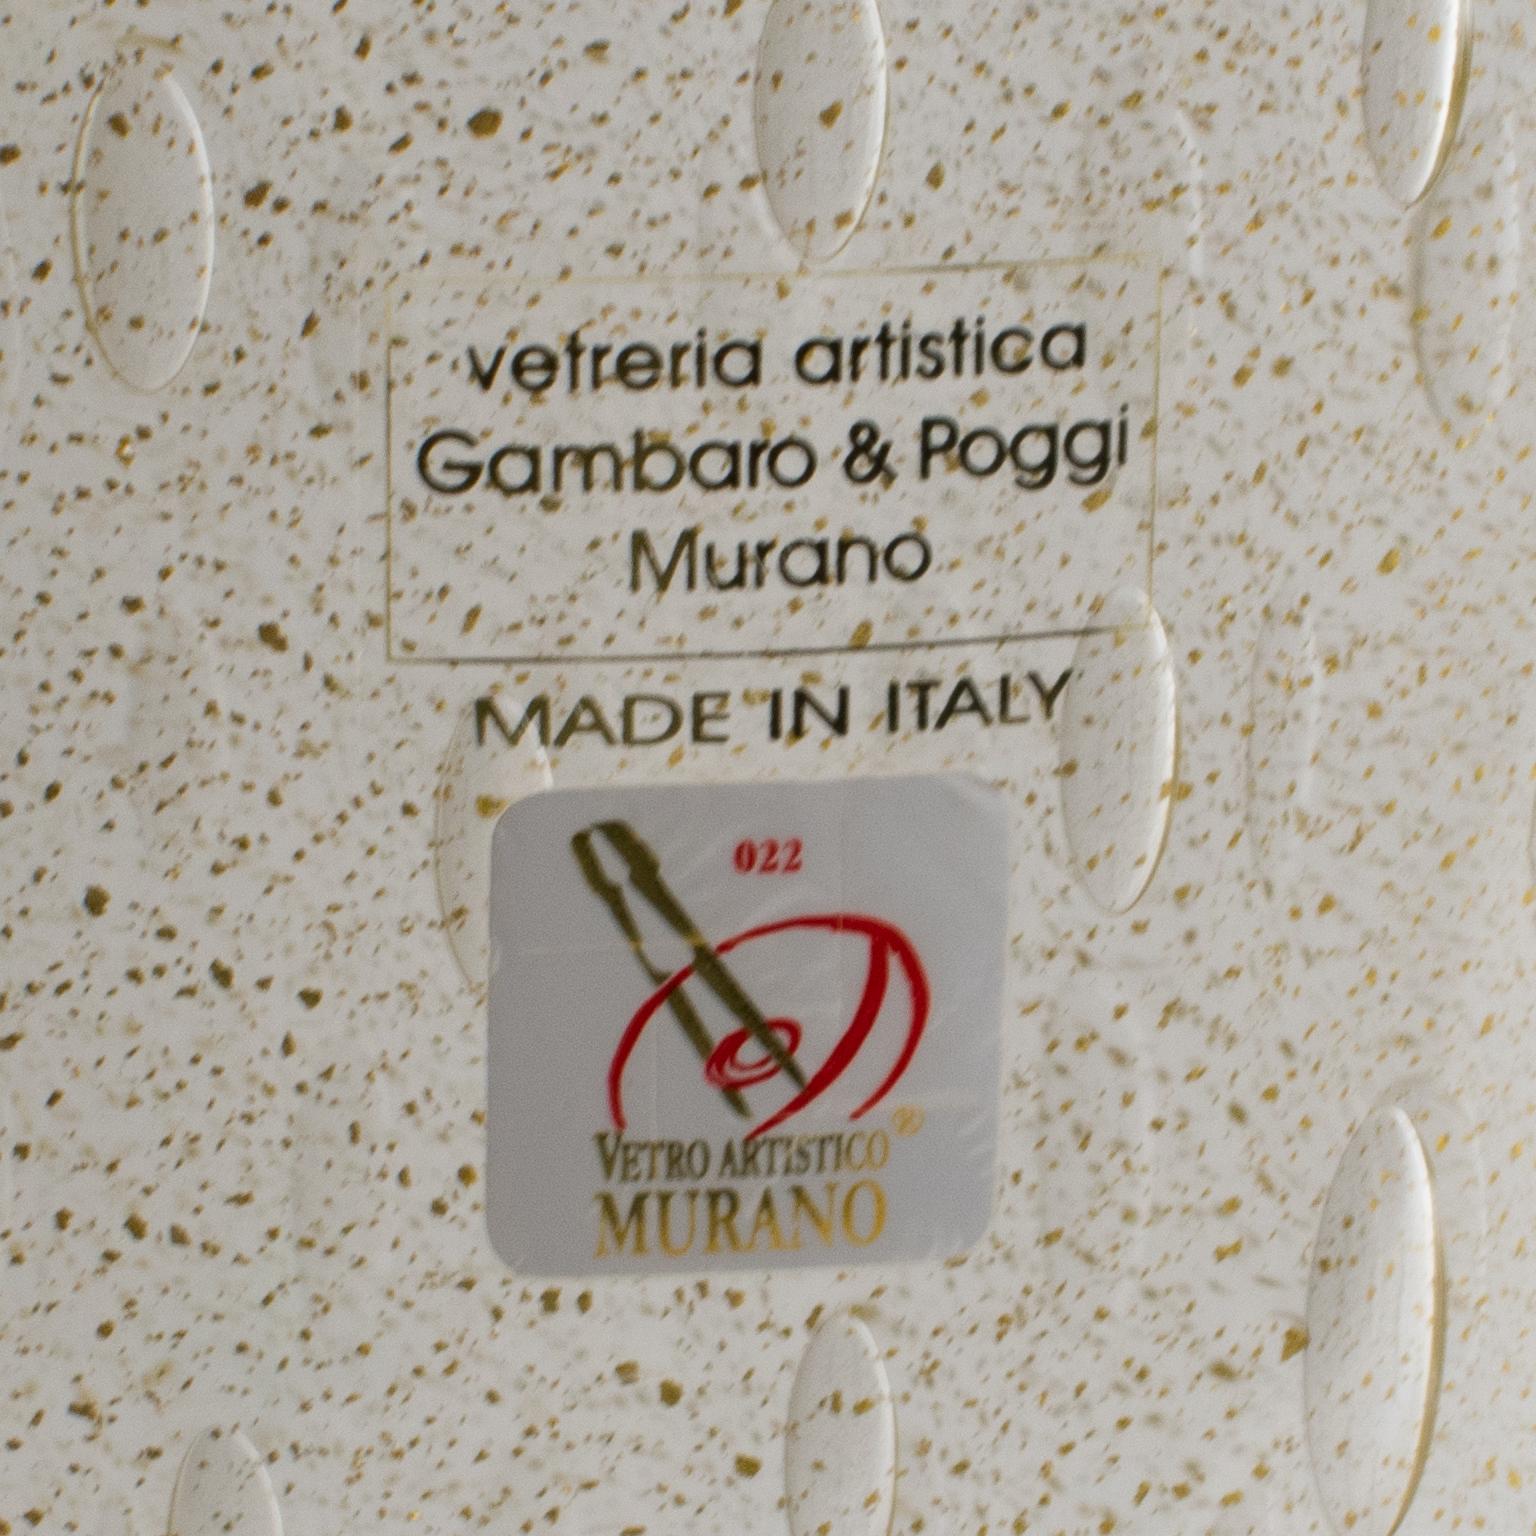 20th Century Italian Art Glass Murano Vase Gold Flakes and Bubbles by Gambaro & Poggi For Sale